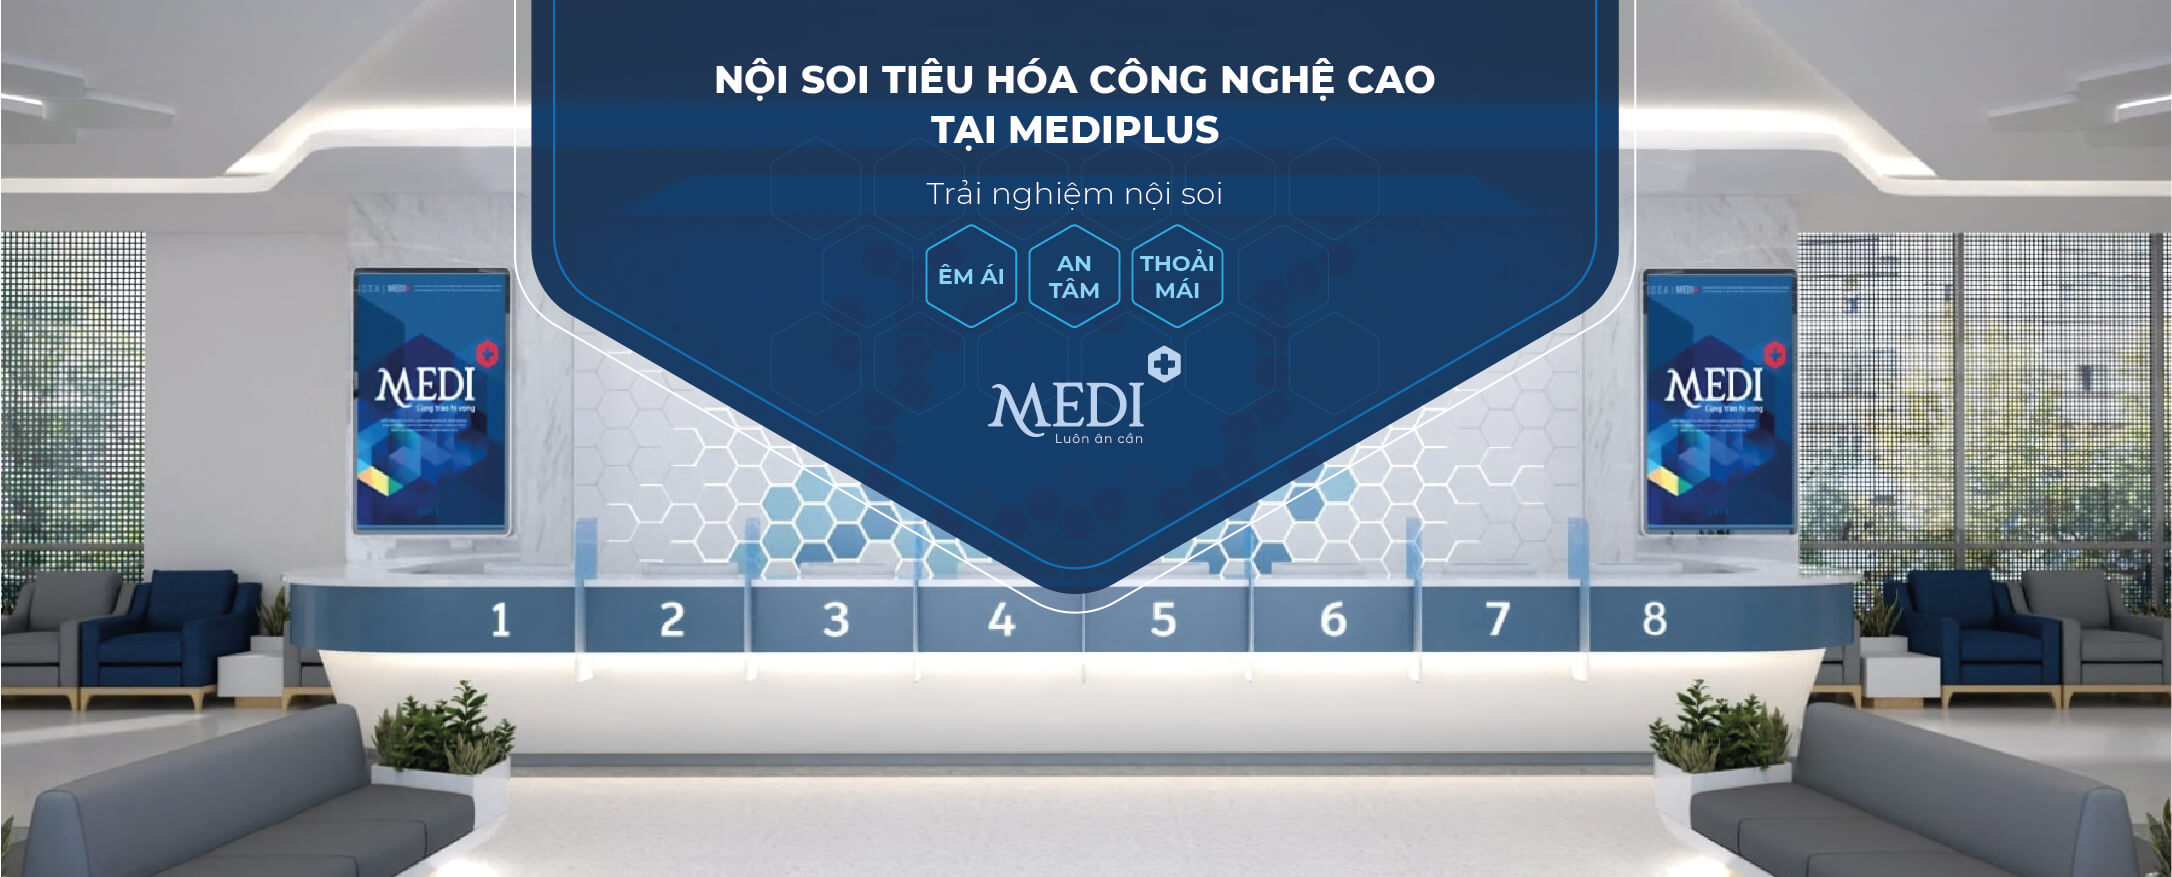 Review Nội soi tiêu hóa công nghệ cao tại MEDIPLUS Hà Nội